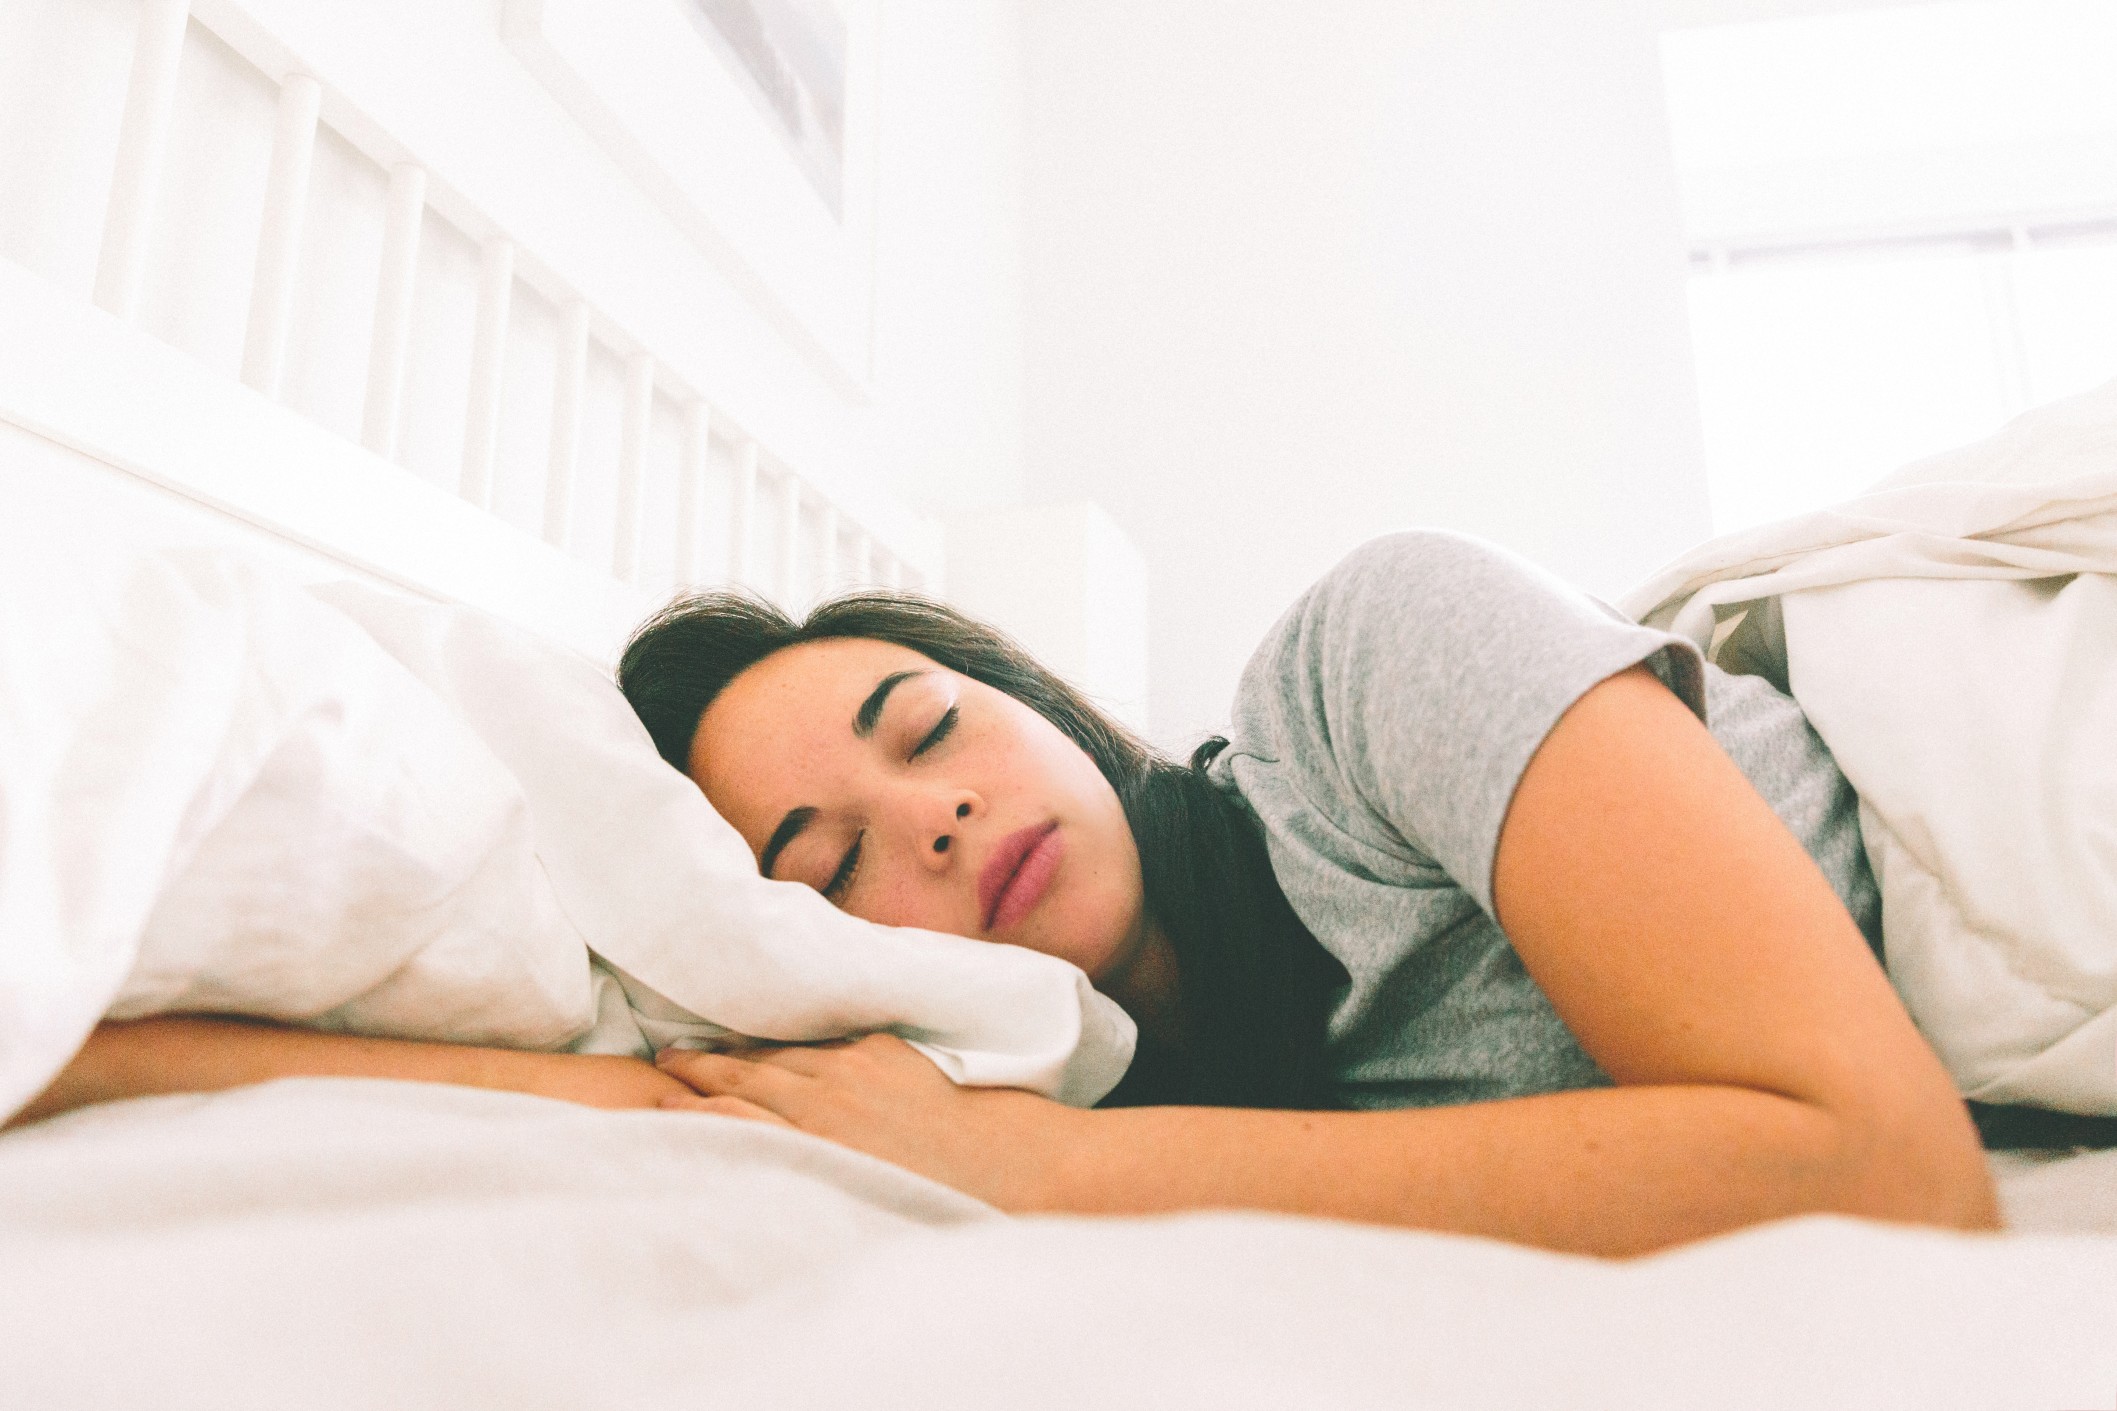 Estudio demuestra que los humanos necesitan más horas de sueño durante el invierno